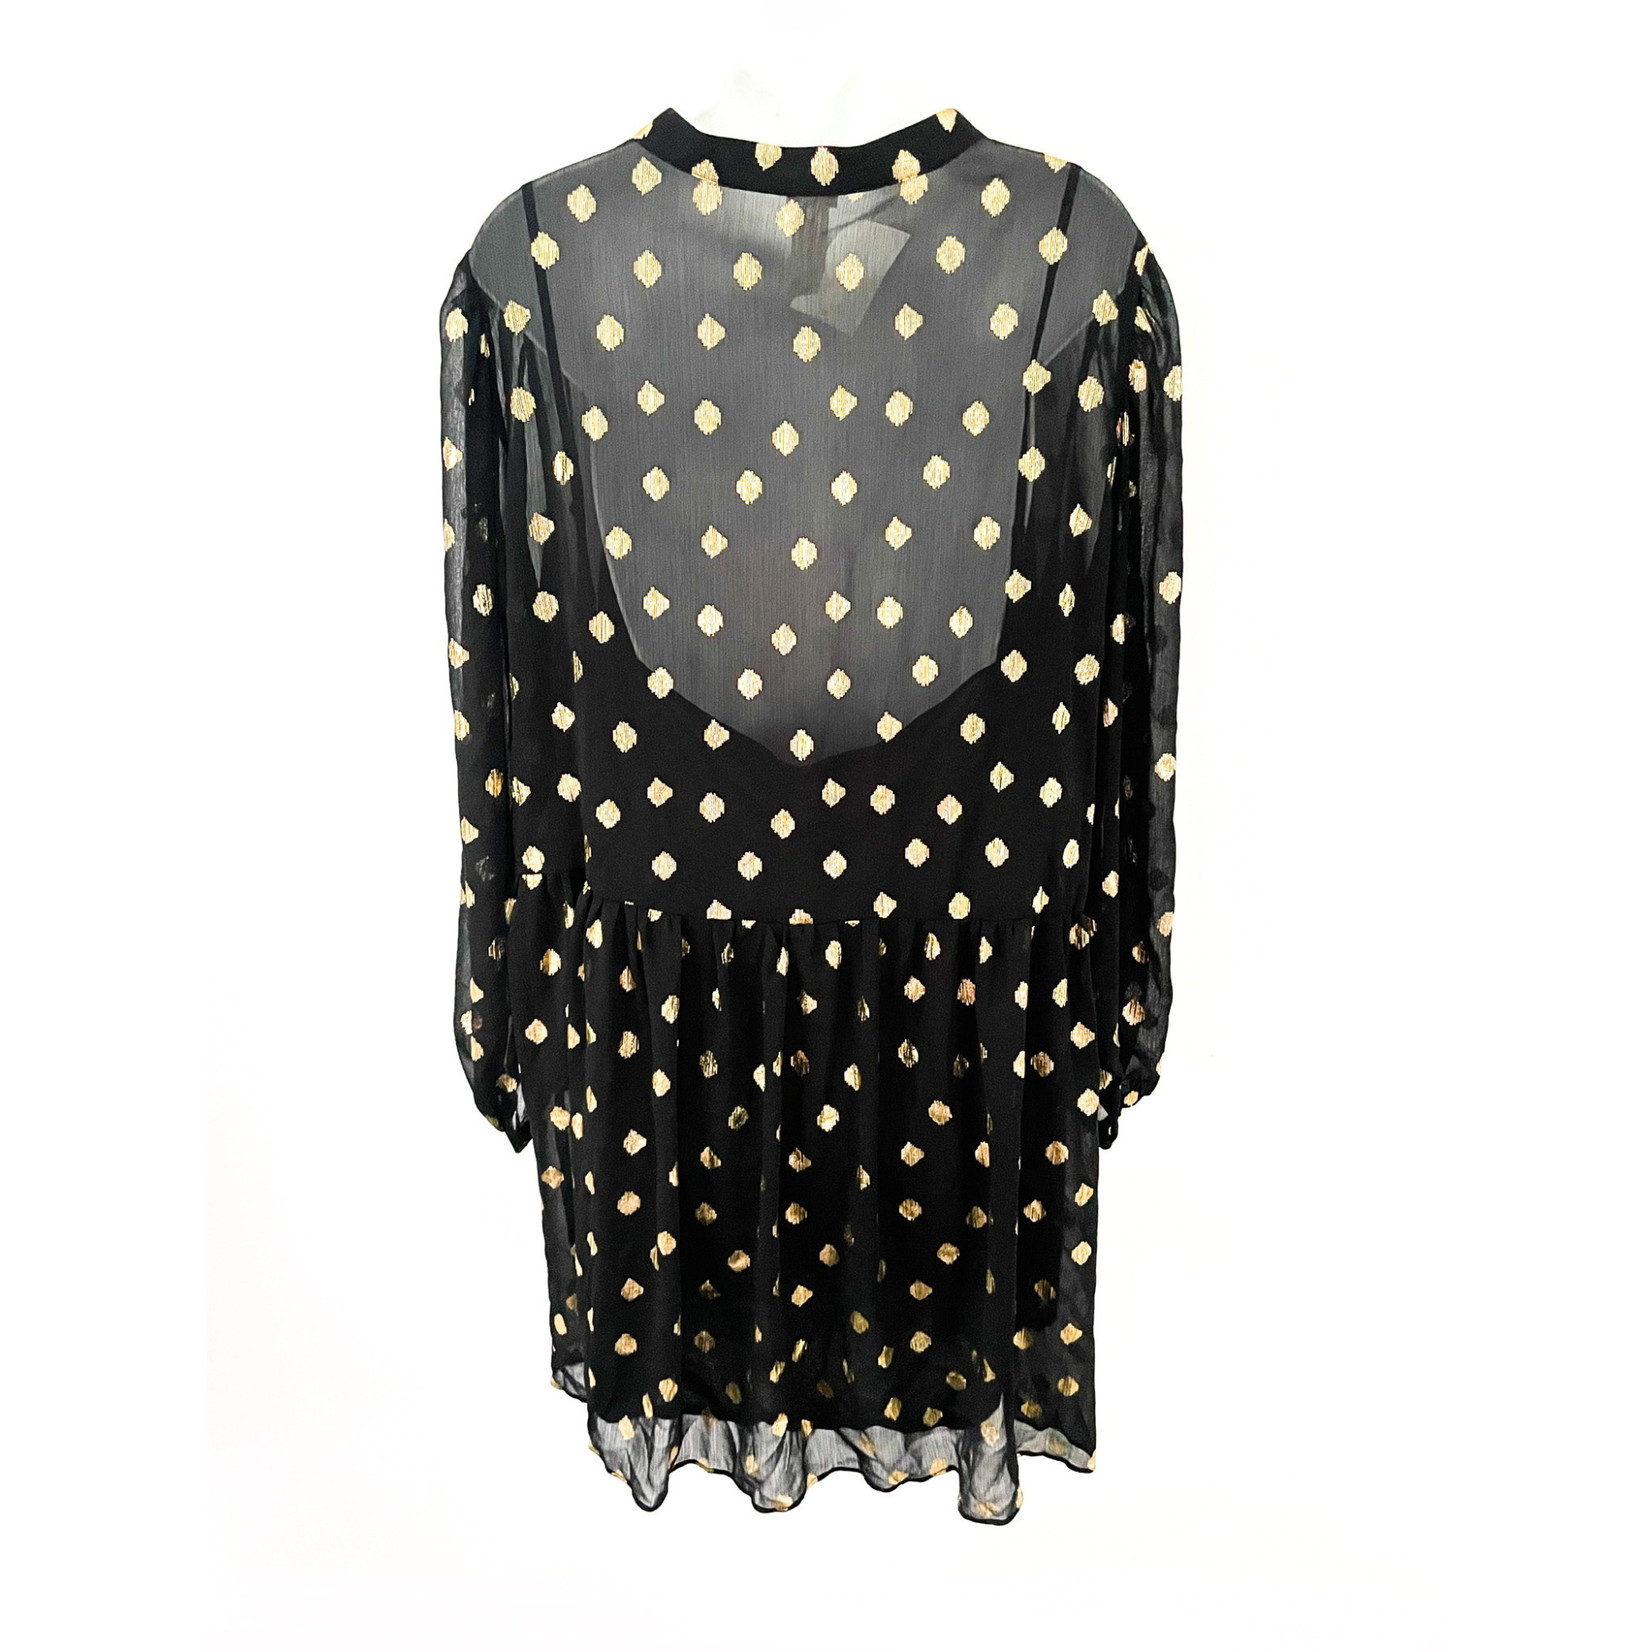 H&M H&M Gold Dot Dress - Size XXL